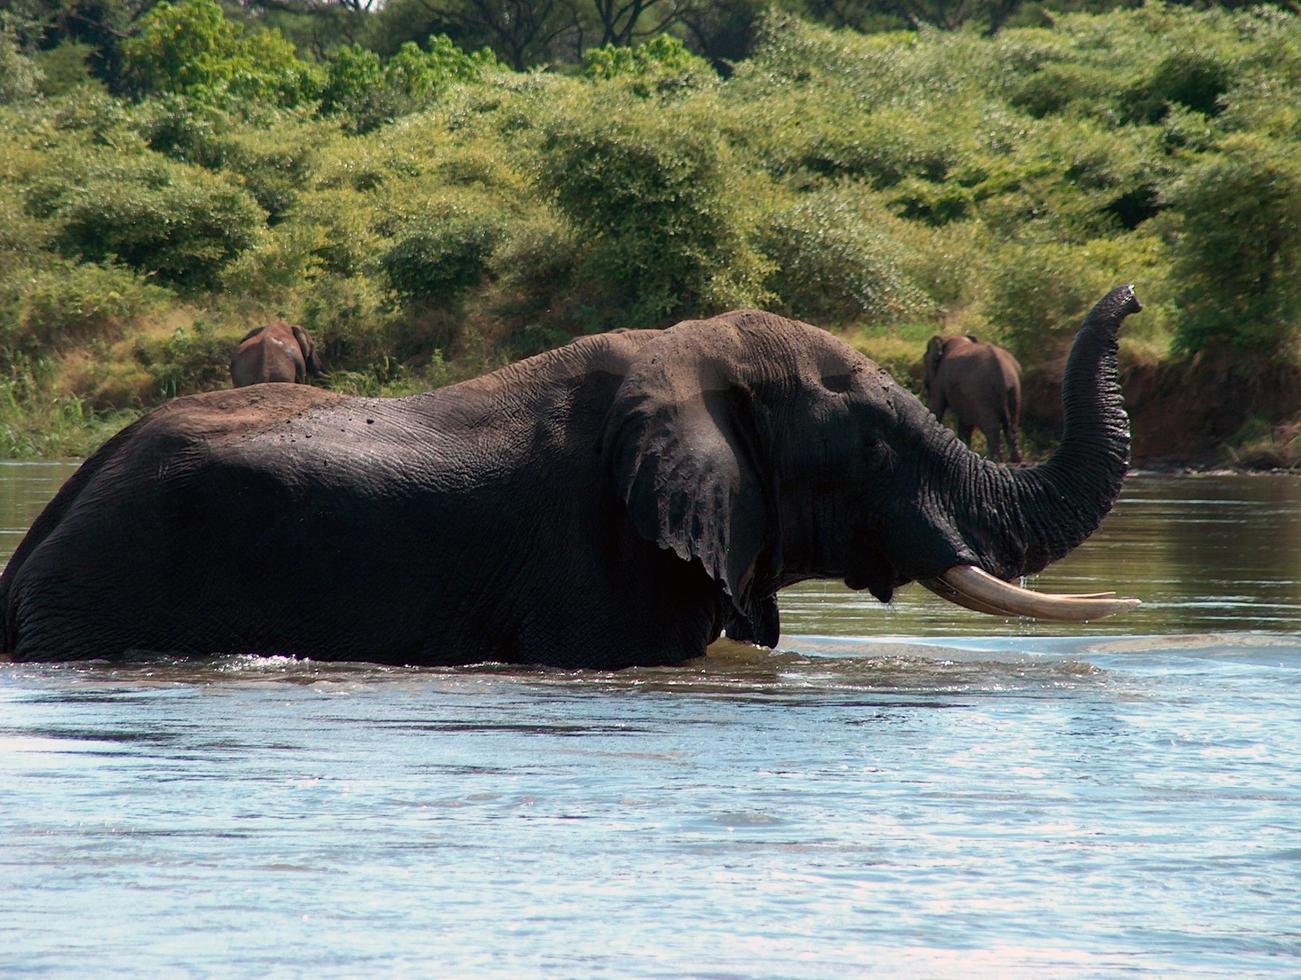 Wild elephants in Africa photo